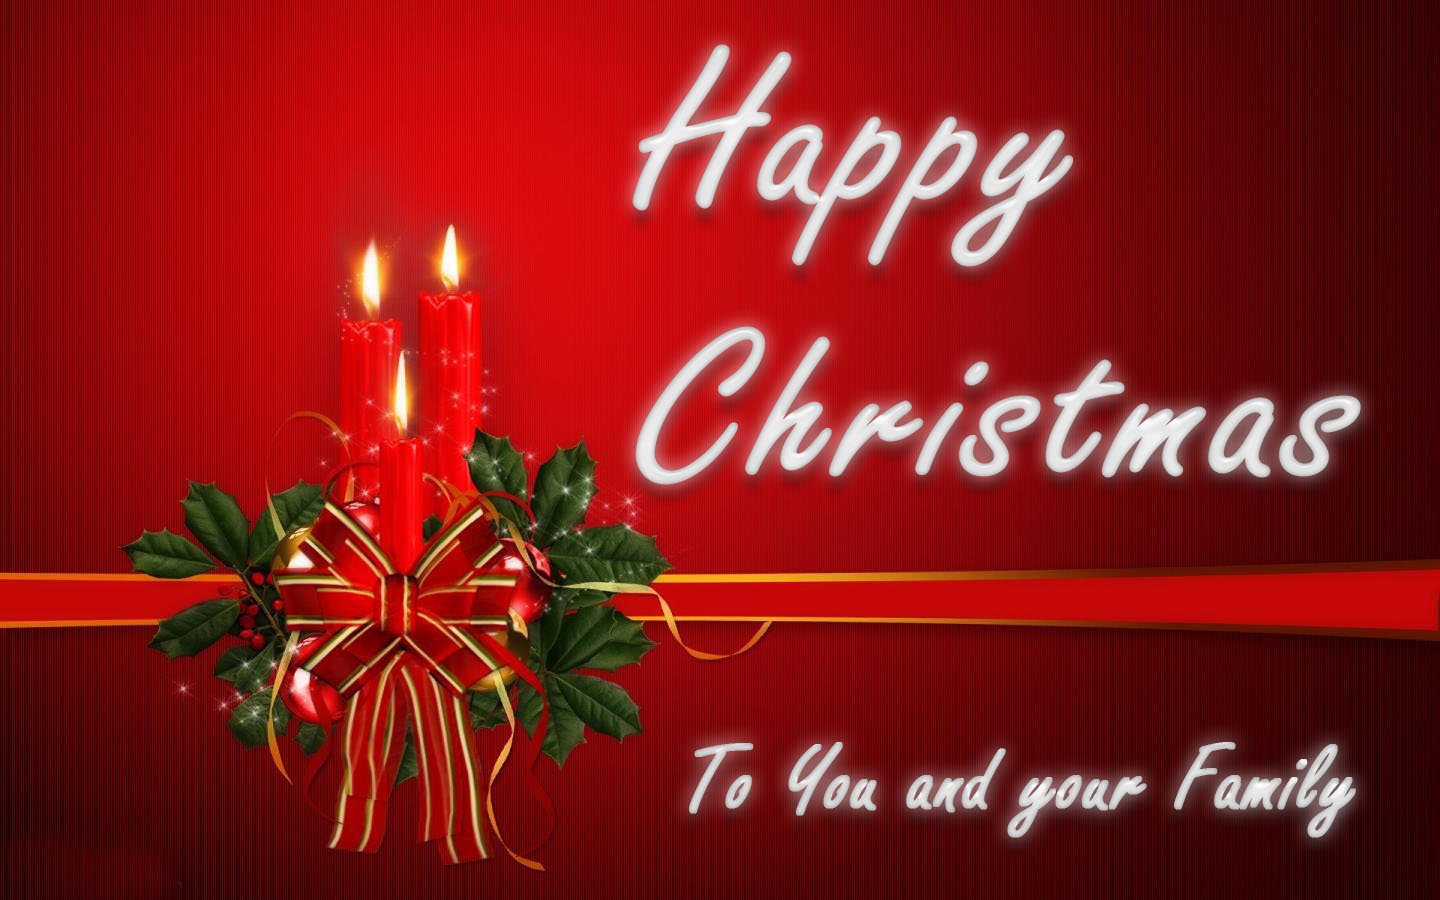 wallpaper proslut Family Christmas Greetings e Cards Online Christmas